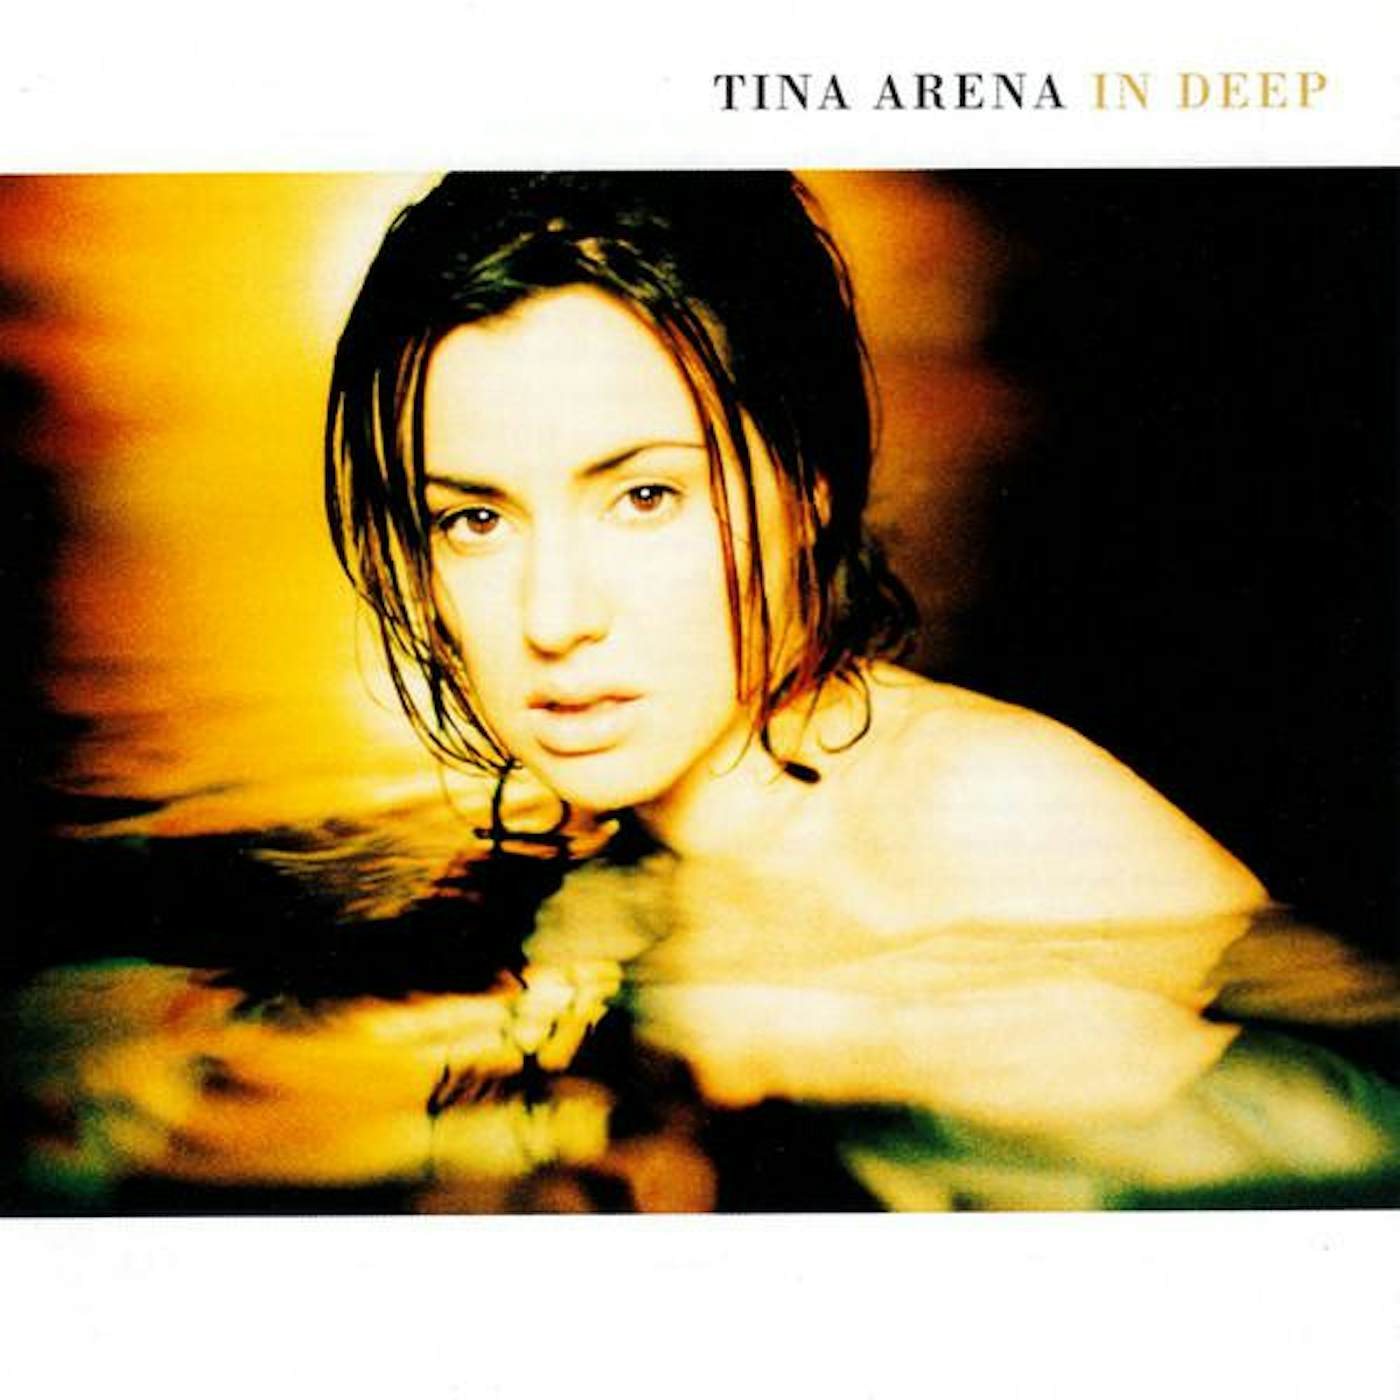 Tina Arena IN DEEP (GOLD SERIES) CD